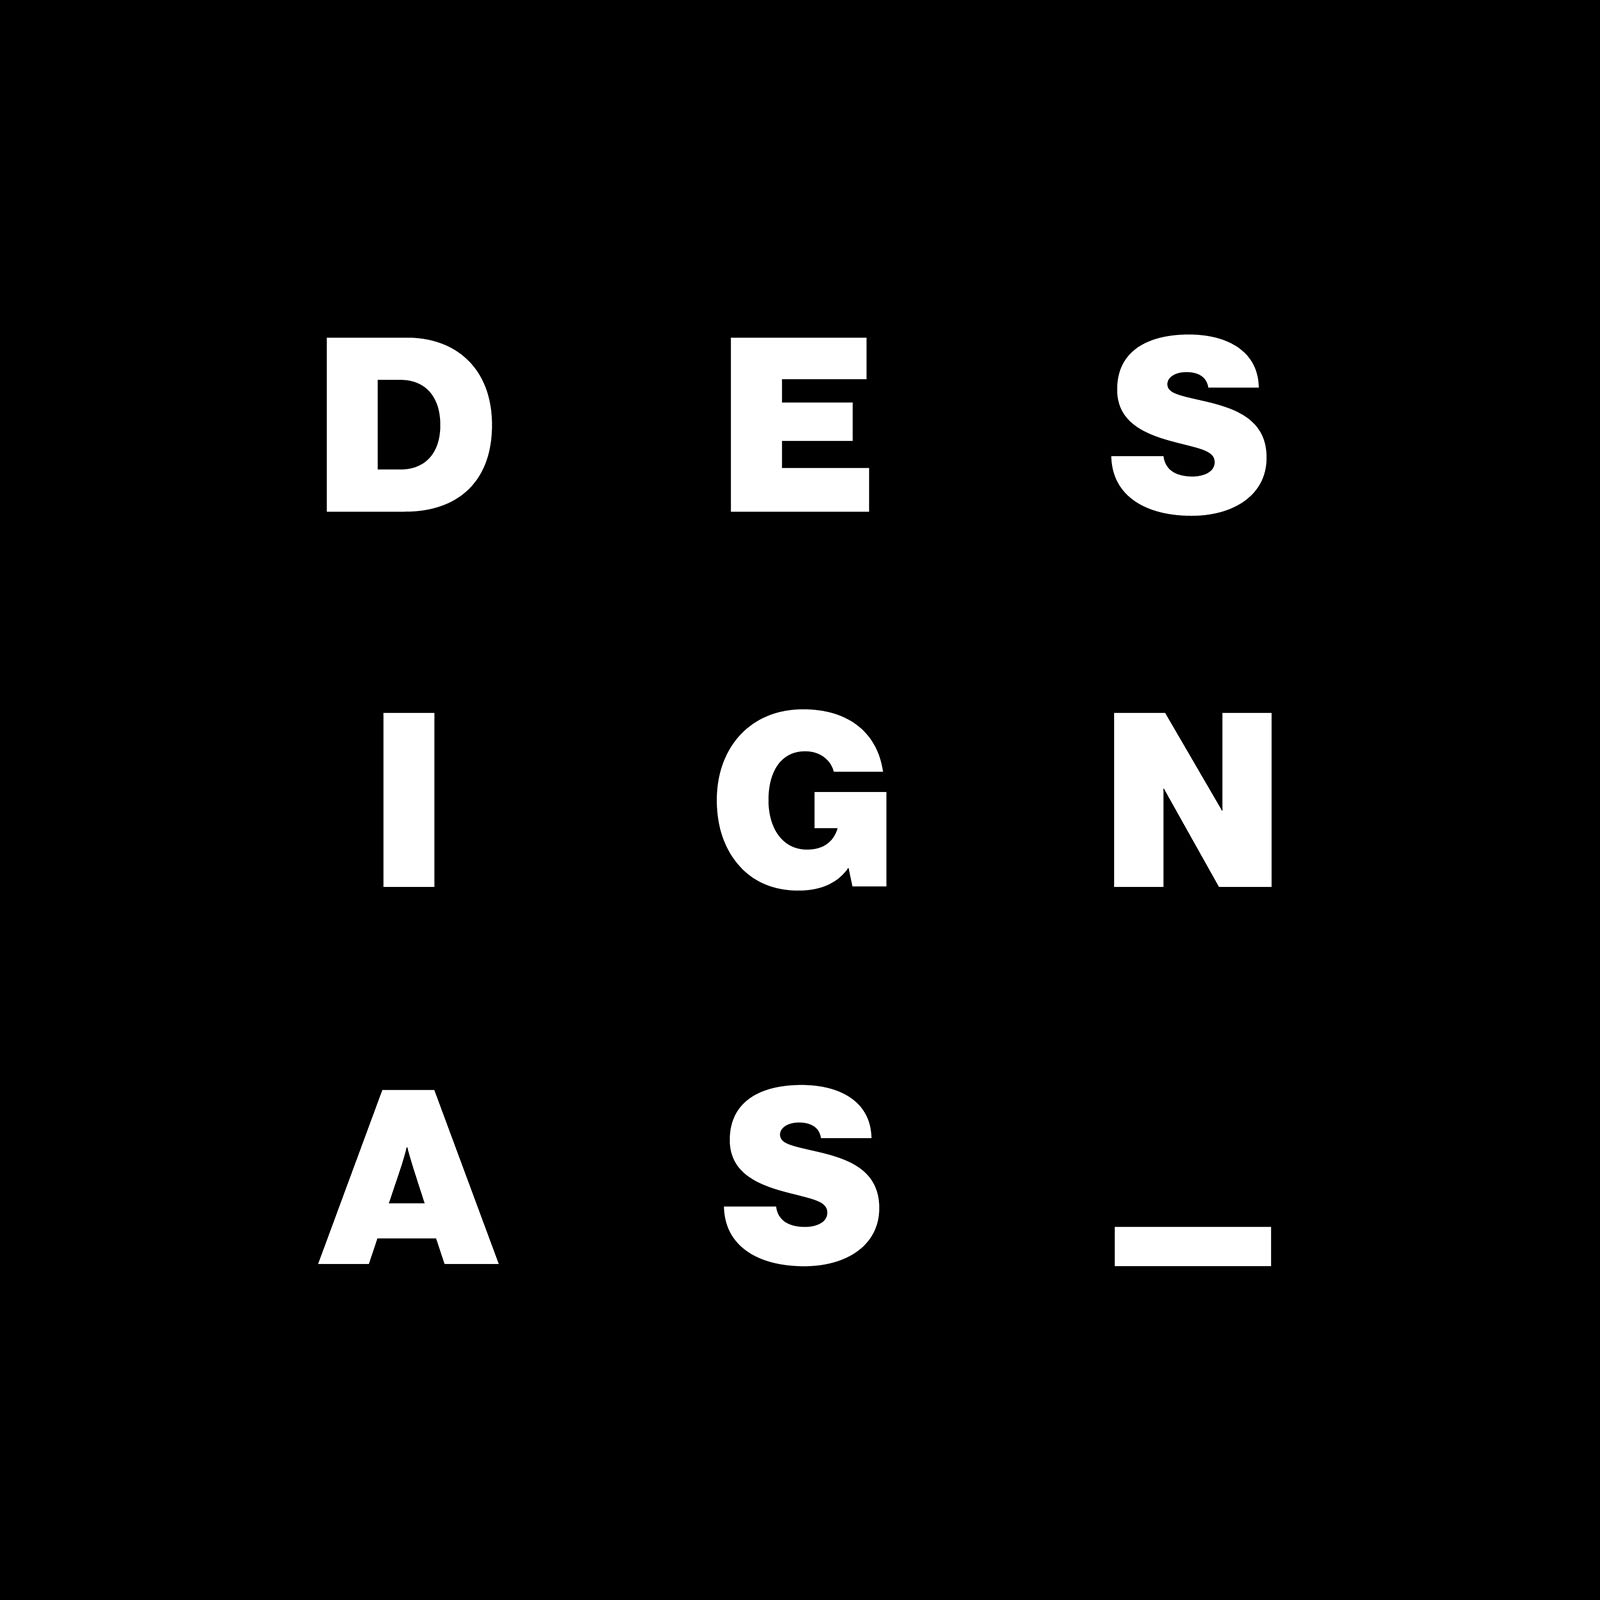 Design As